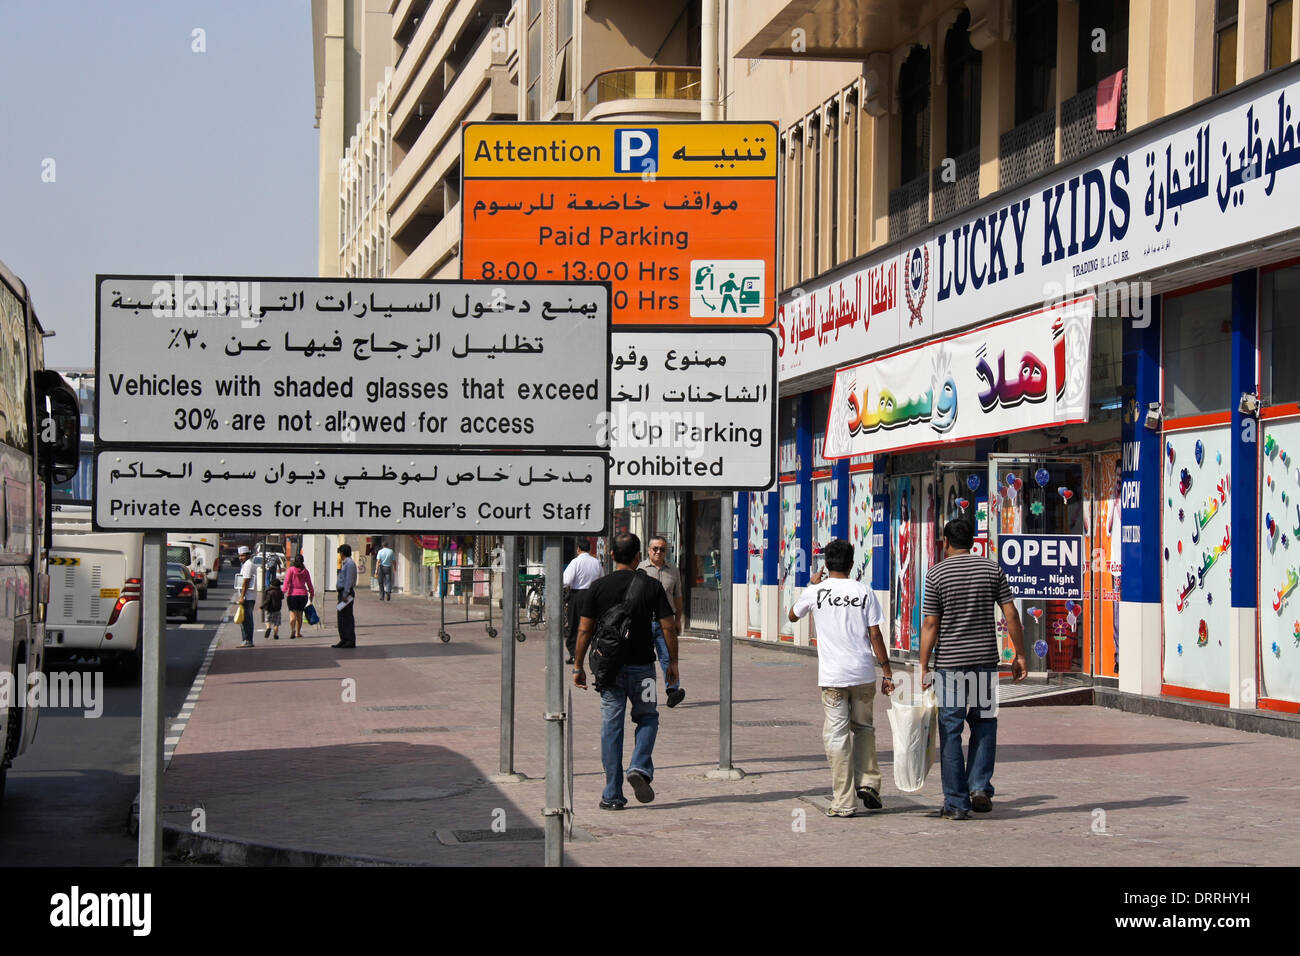 Straßenszene mit Zeichen in Arabisch und Englisch, Dubai, Vereinigte Arabische Emirate Stockfoto